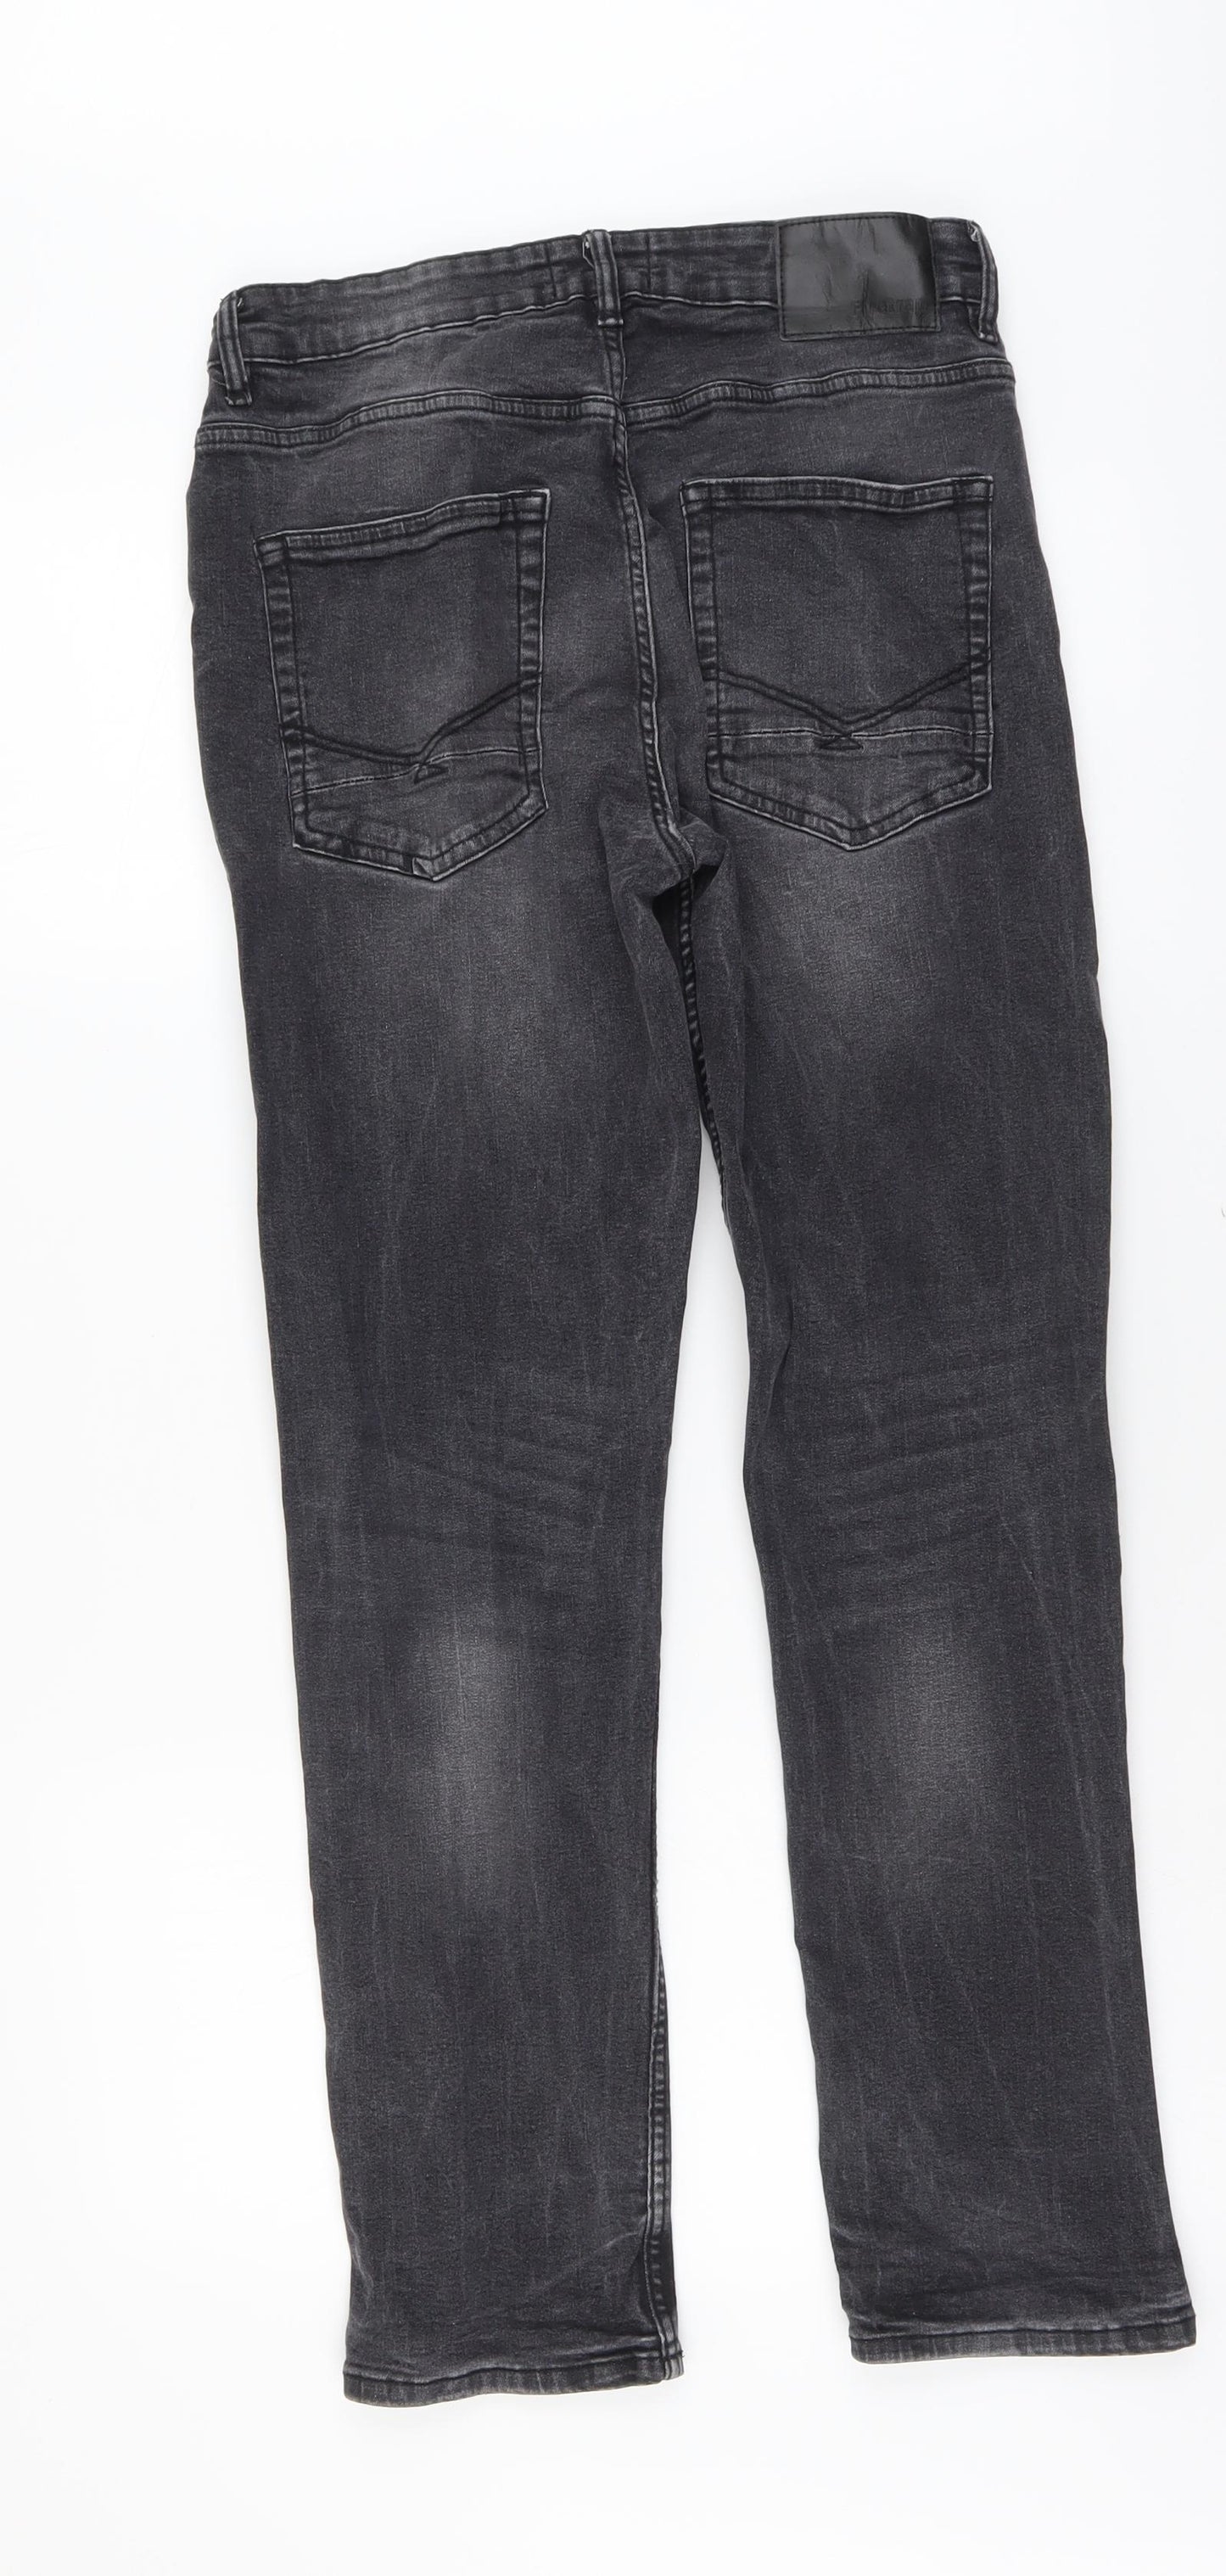 Firetrap Mens Grey Cotton Straight Jeans Size 30 in L30 in Slim Button